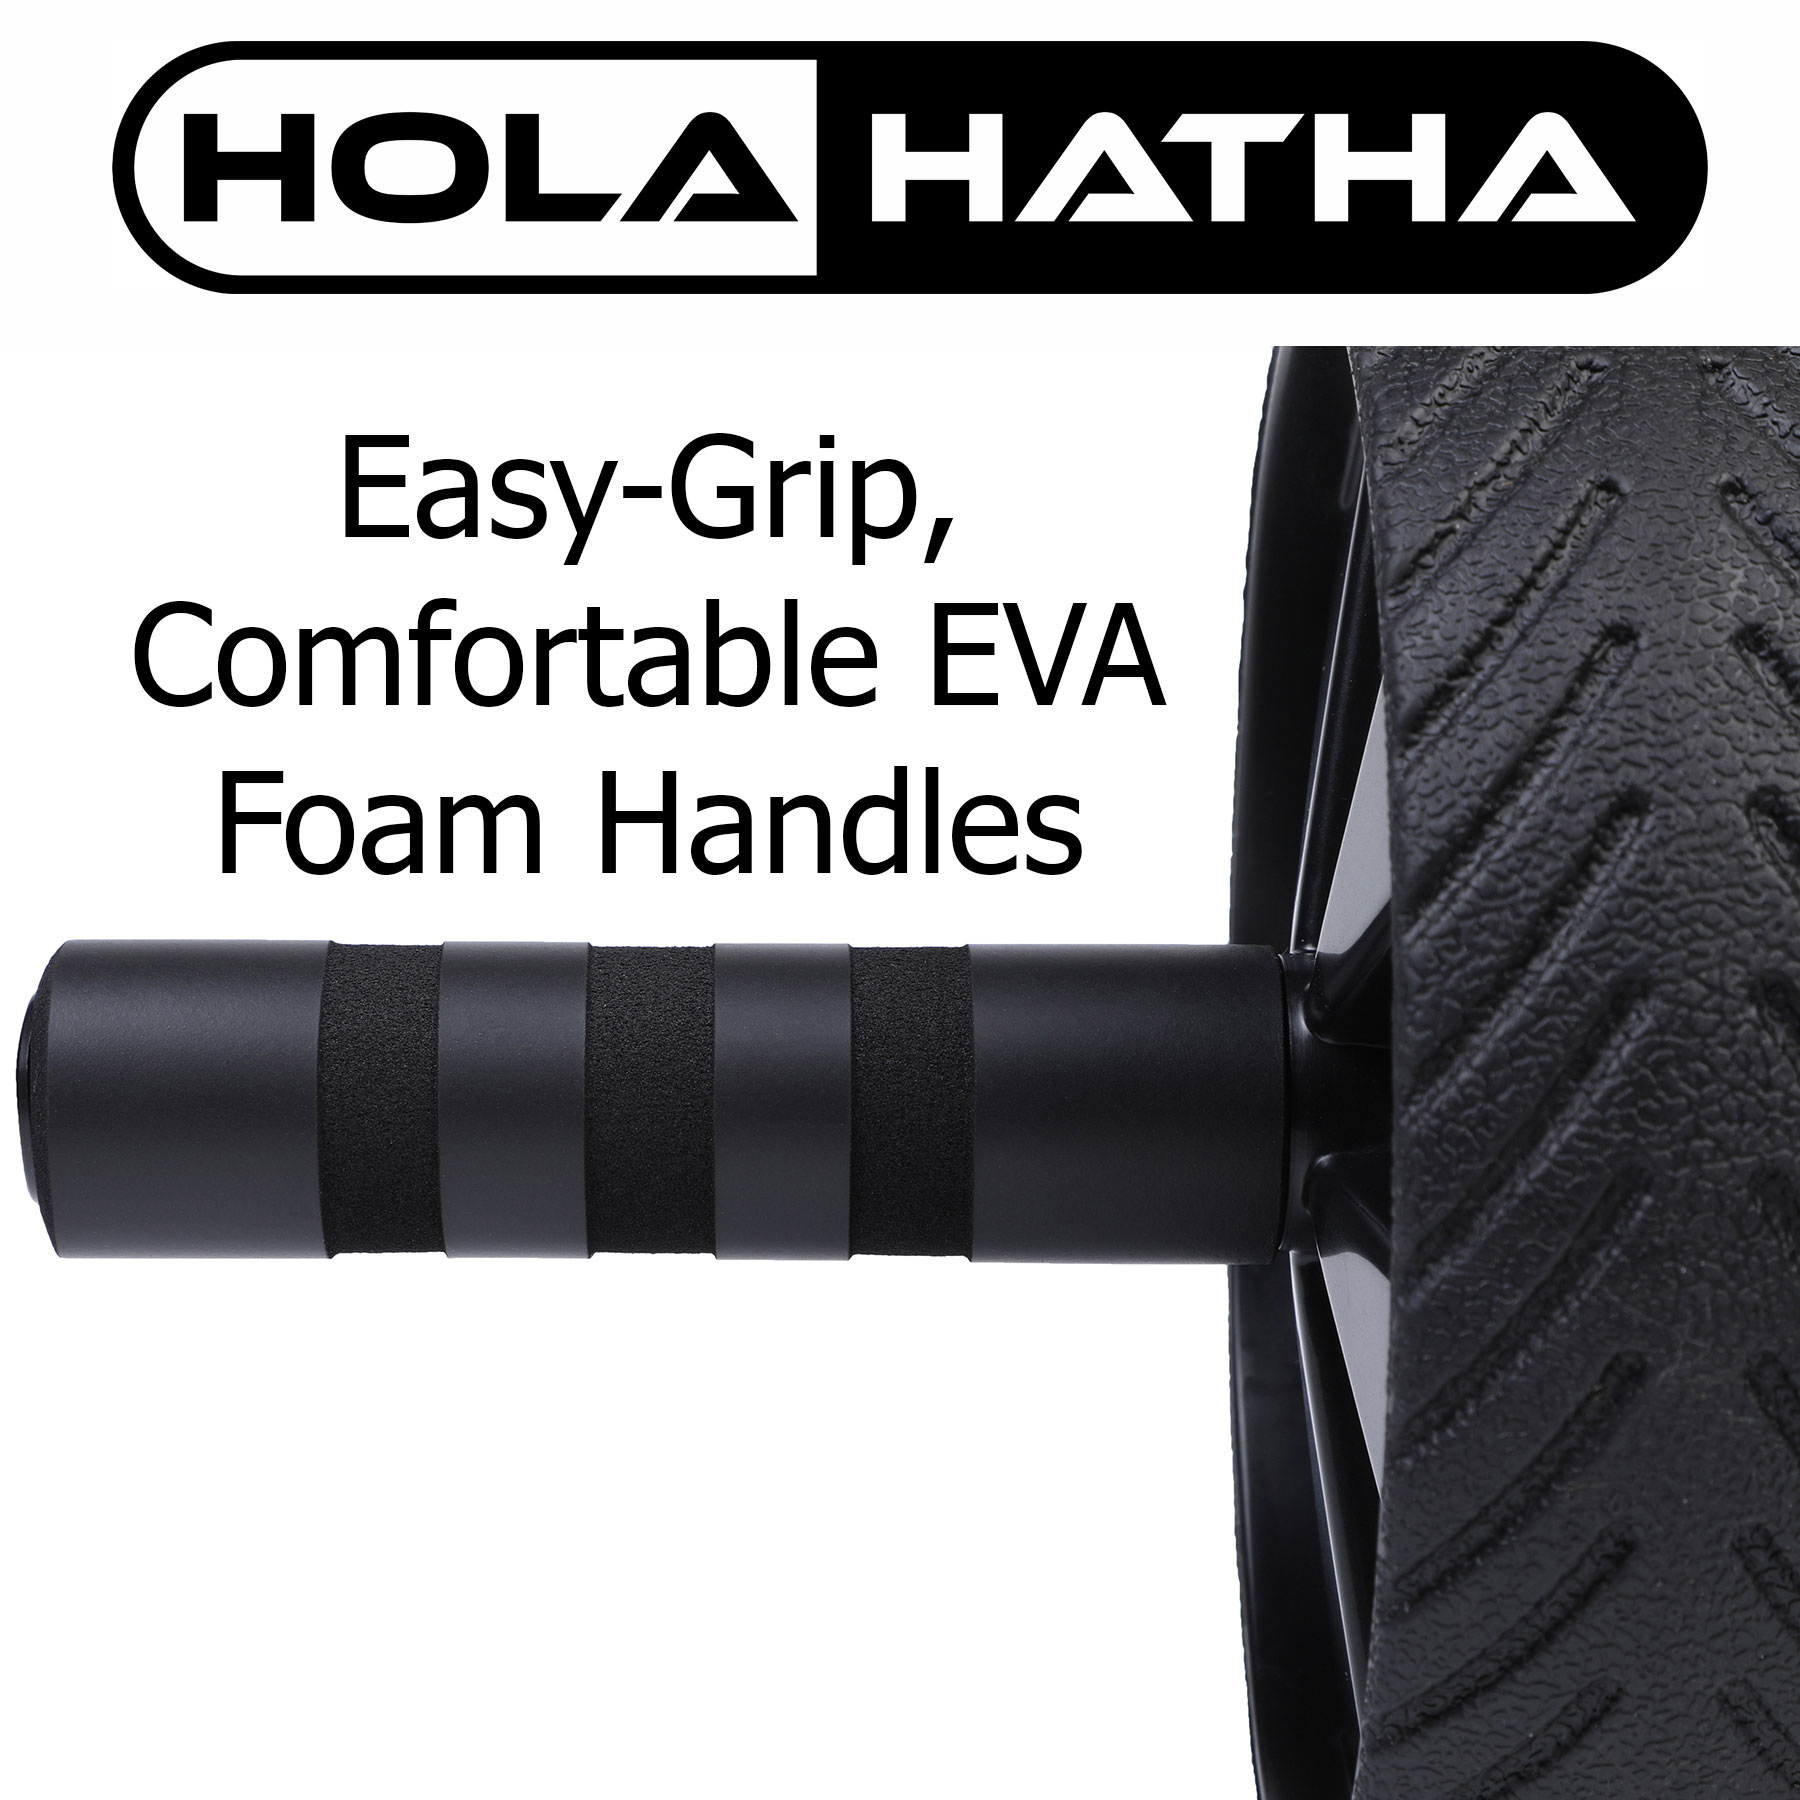 HolaHatha Exercise Fitness Abdominal Core Toner Workout Single Ab Roller Wheel - image 5 of 7